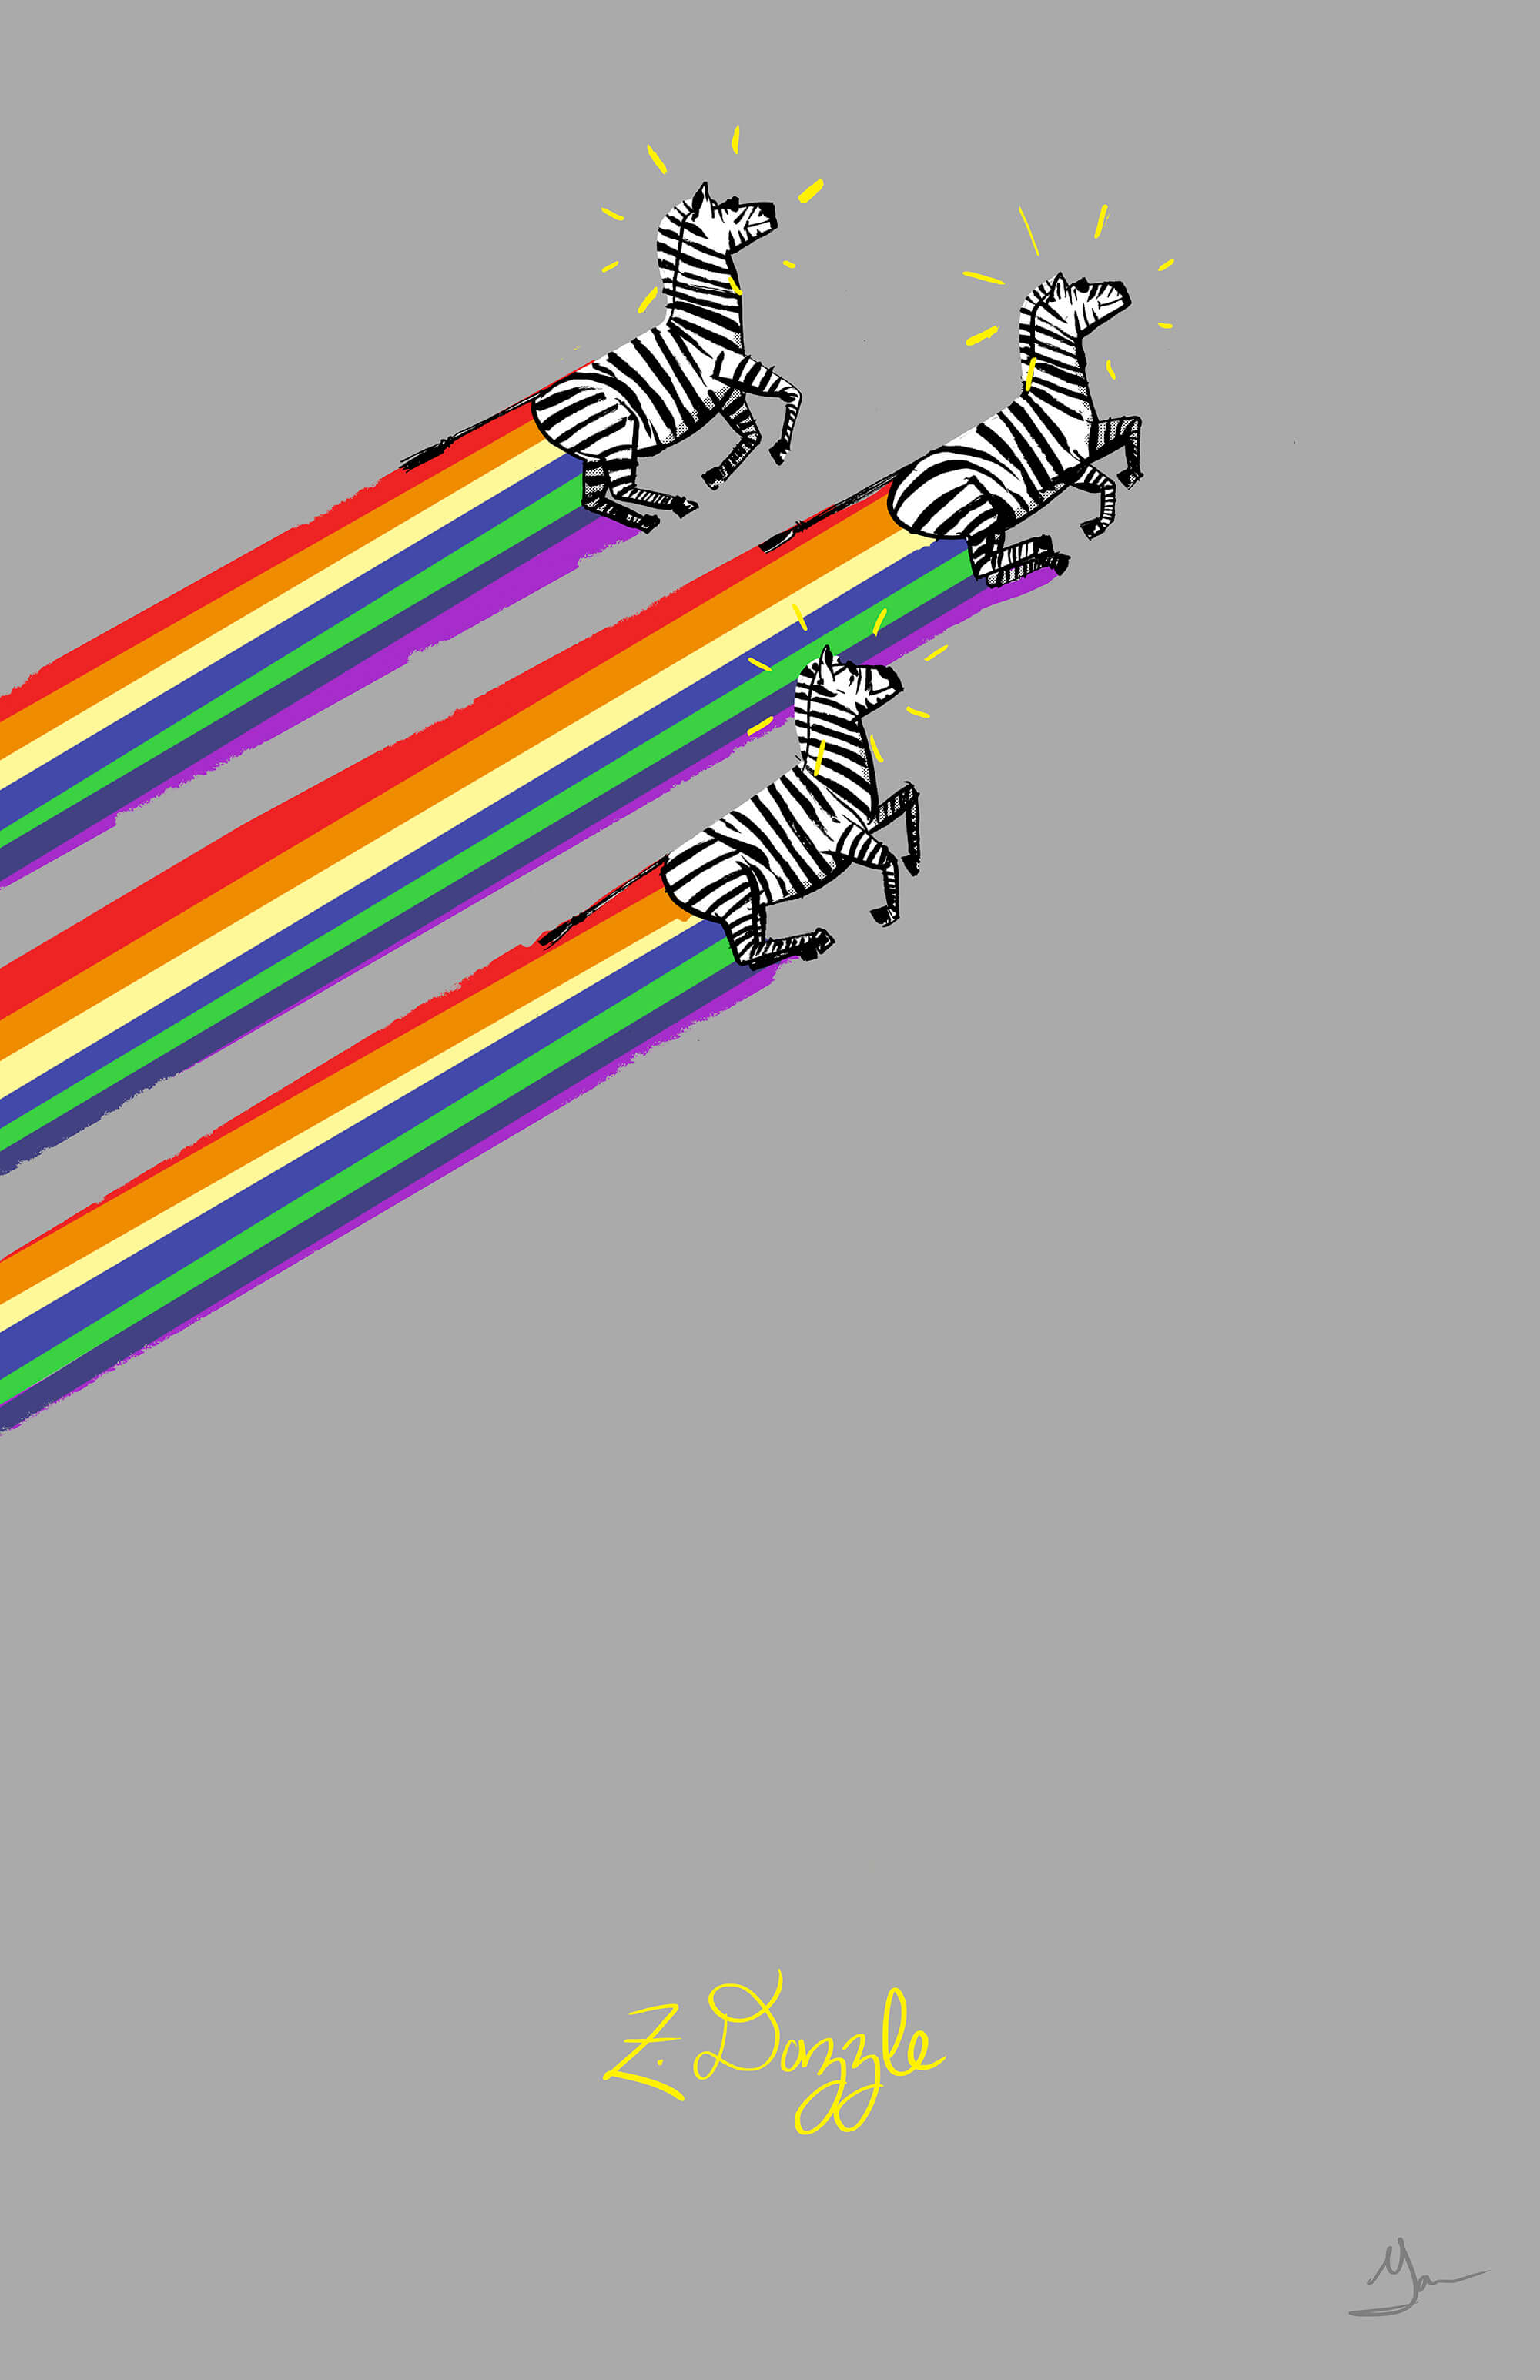 Three zebras flying through air, rainbows trailing behind them.